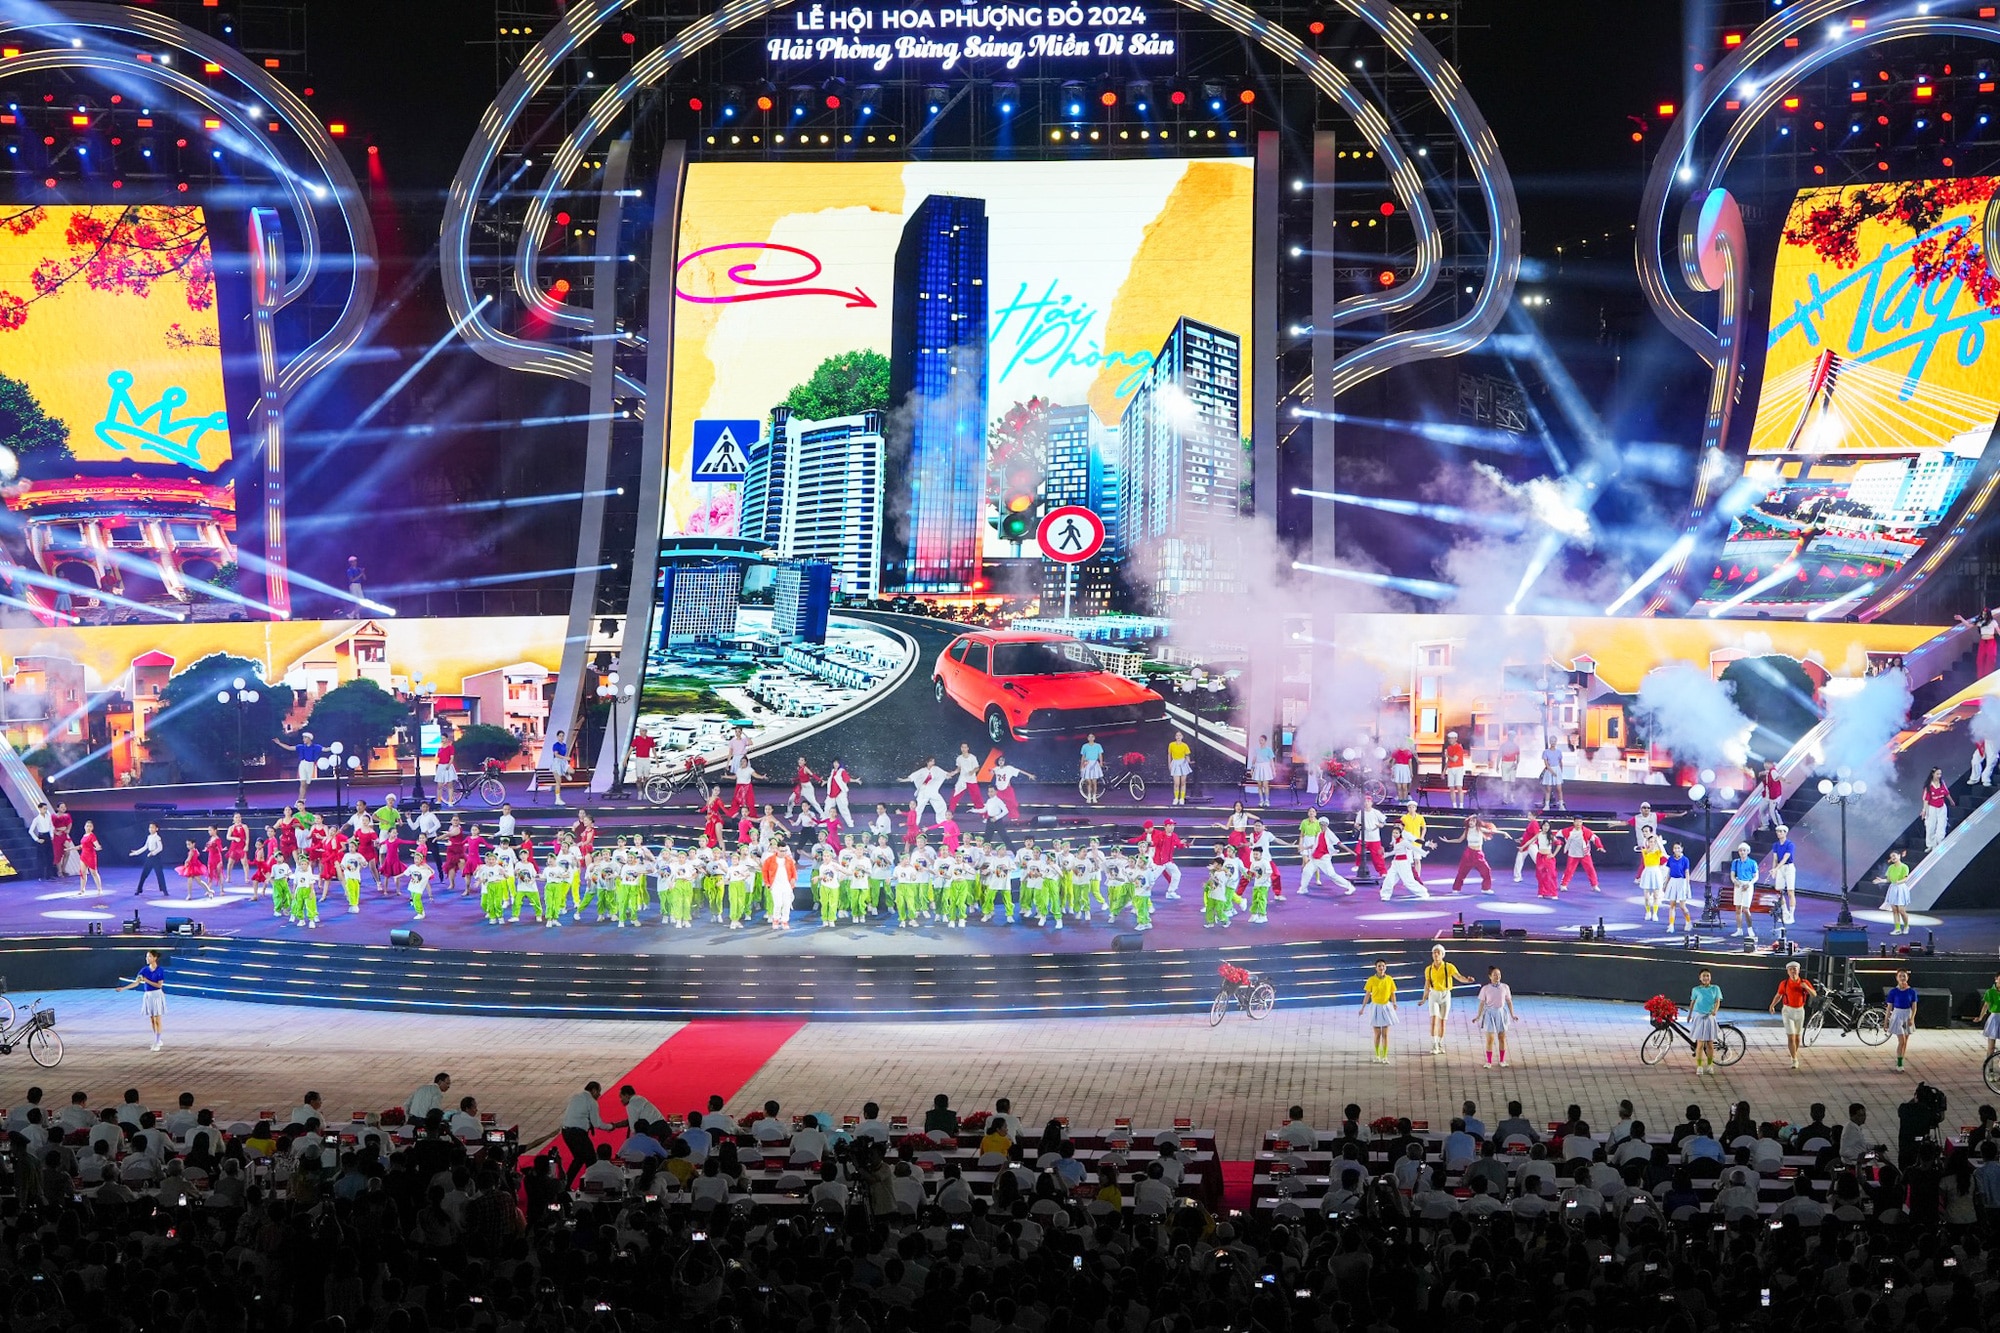 Sân khấu lễ hội Hoa phượng đỏ Hải Phòng 2024 được đánh giá là hoành tráng nhất từ trước đến nay, thu hút hàng vạn người dân, du khách - Ảnh: T. THẮNG